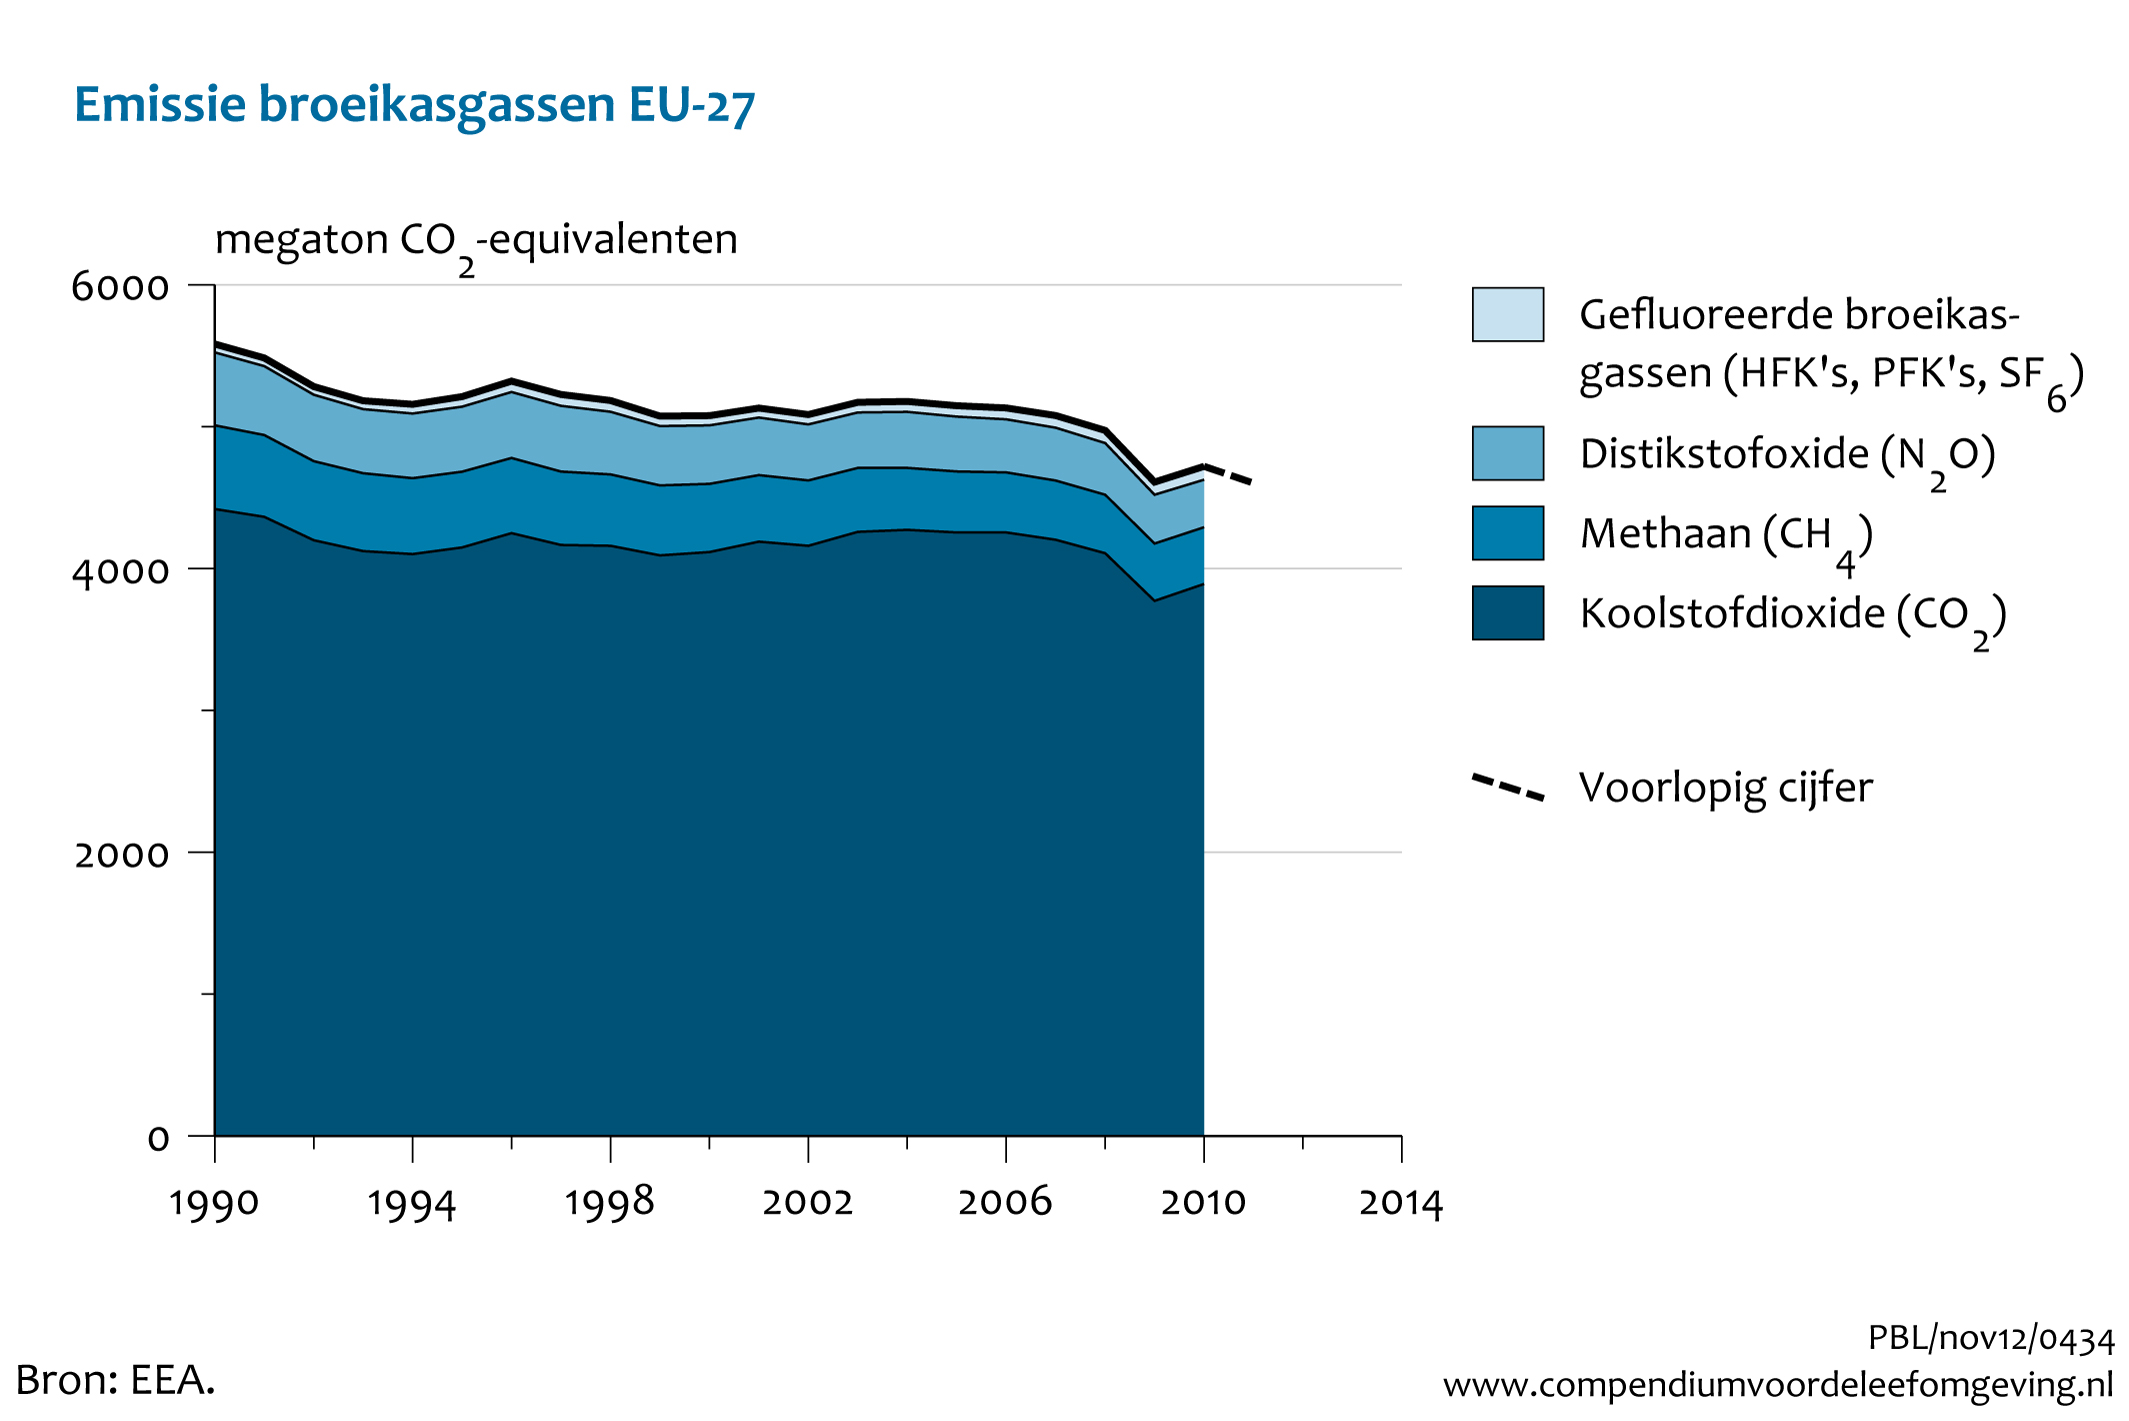 Figuur Uitstoot broeikasgassen in Europa (EU-27), 1990-2011. In de rest van de tekst wordt deze figuur uitgebreider uitgelegd.